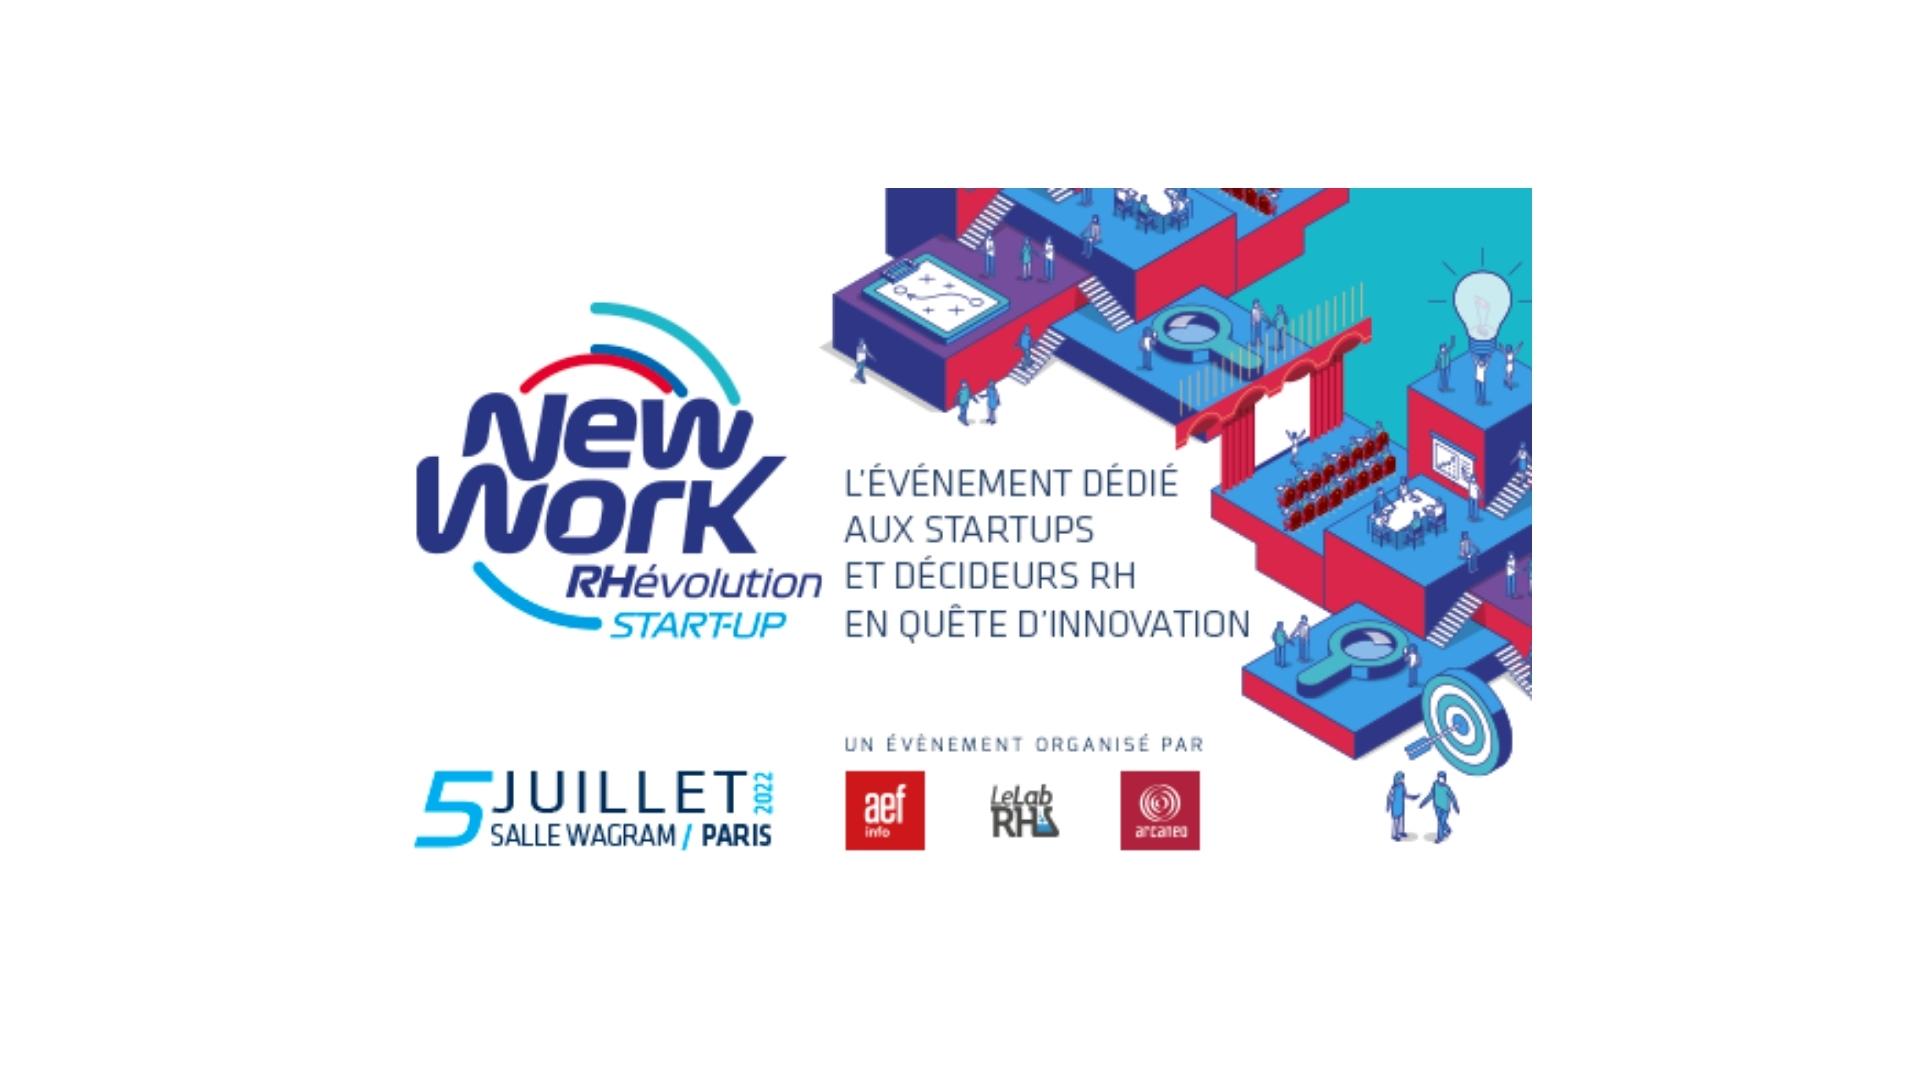 NewWork Rhévolution startup